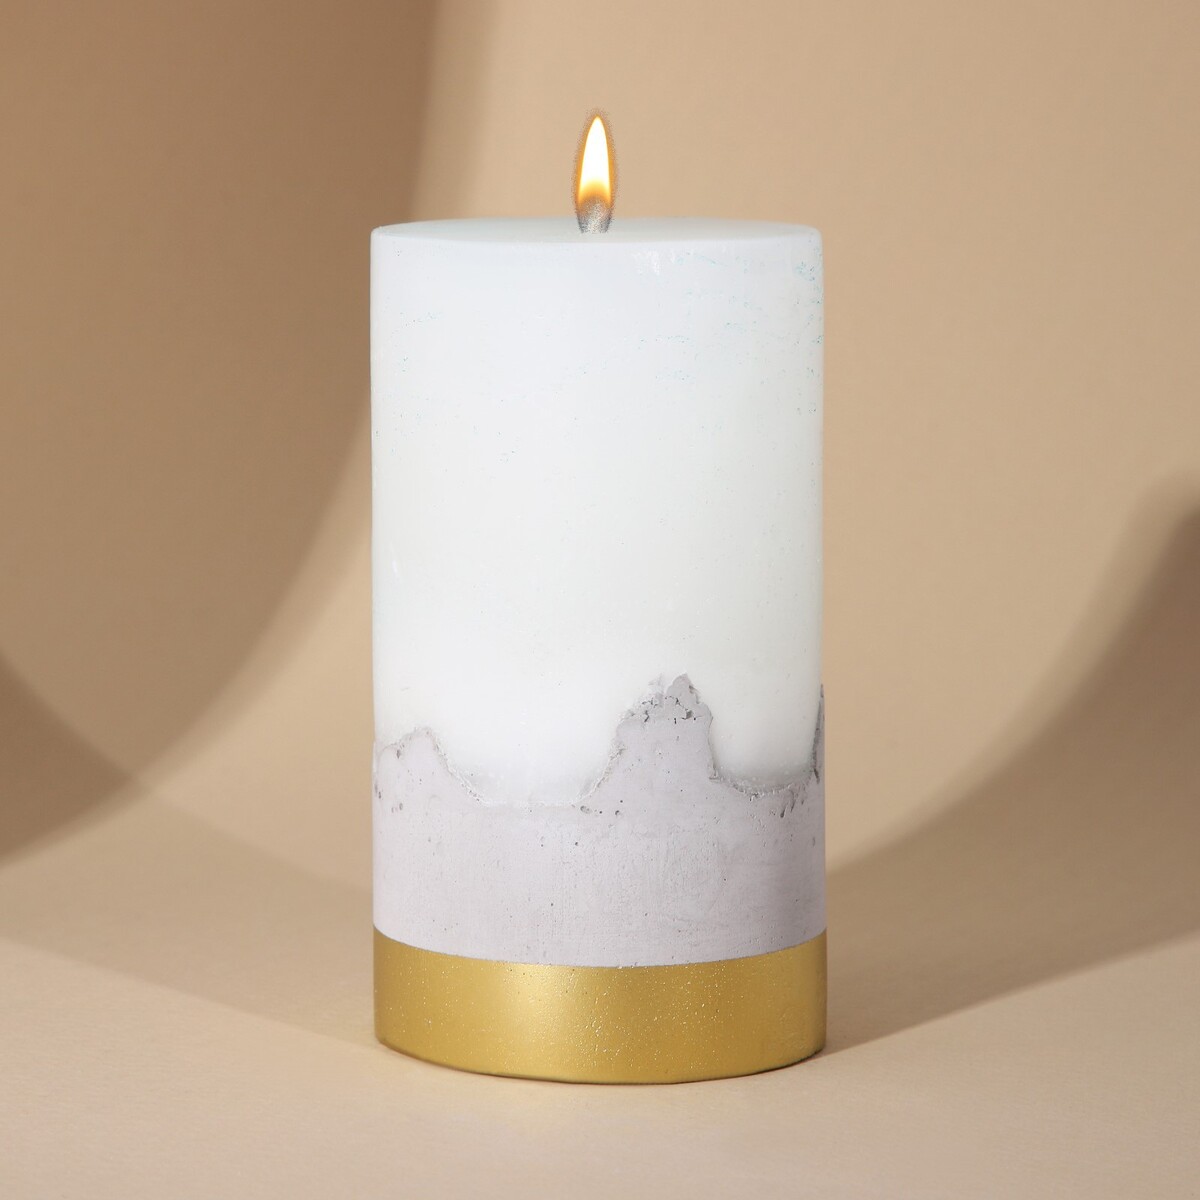 Свеча интерьерная белая с бетоном, низ золото, 13 х 7 см свеча интерьерная белая с бетоном 14 х 5 см